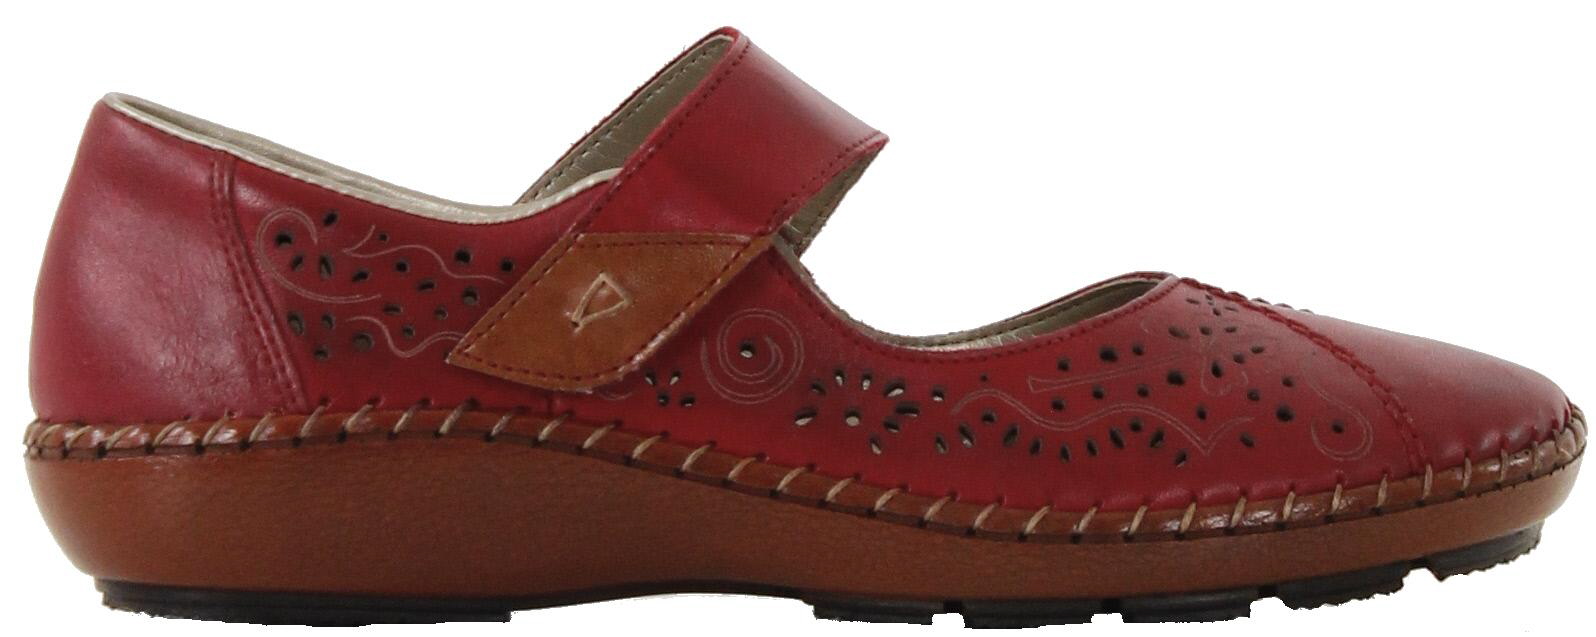 Rieker Walking shoes 44896-33 red - Stilettoshop.eu webstore